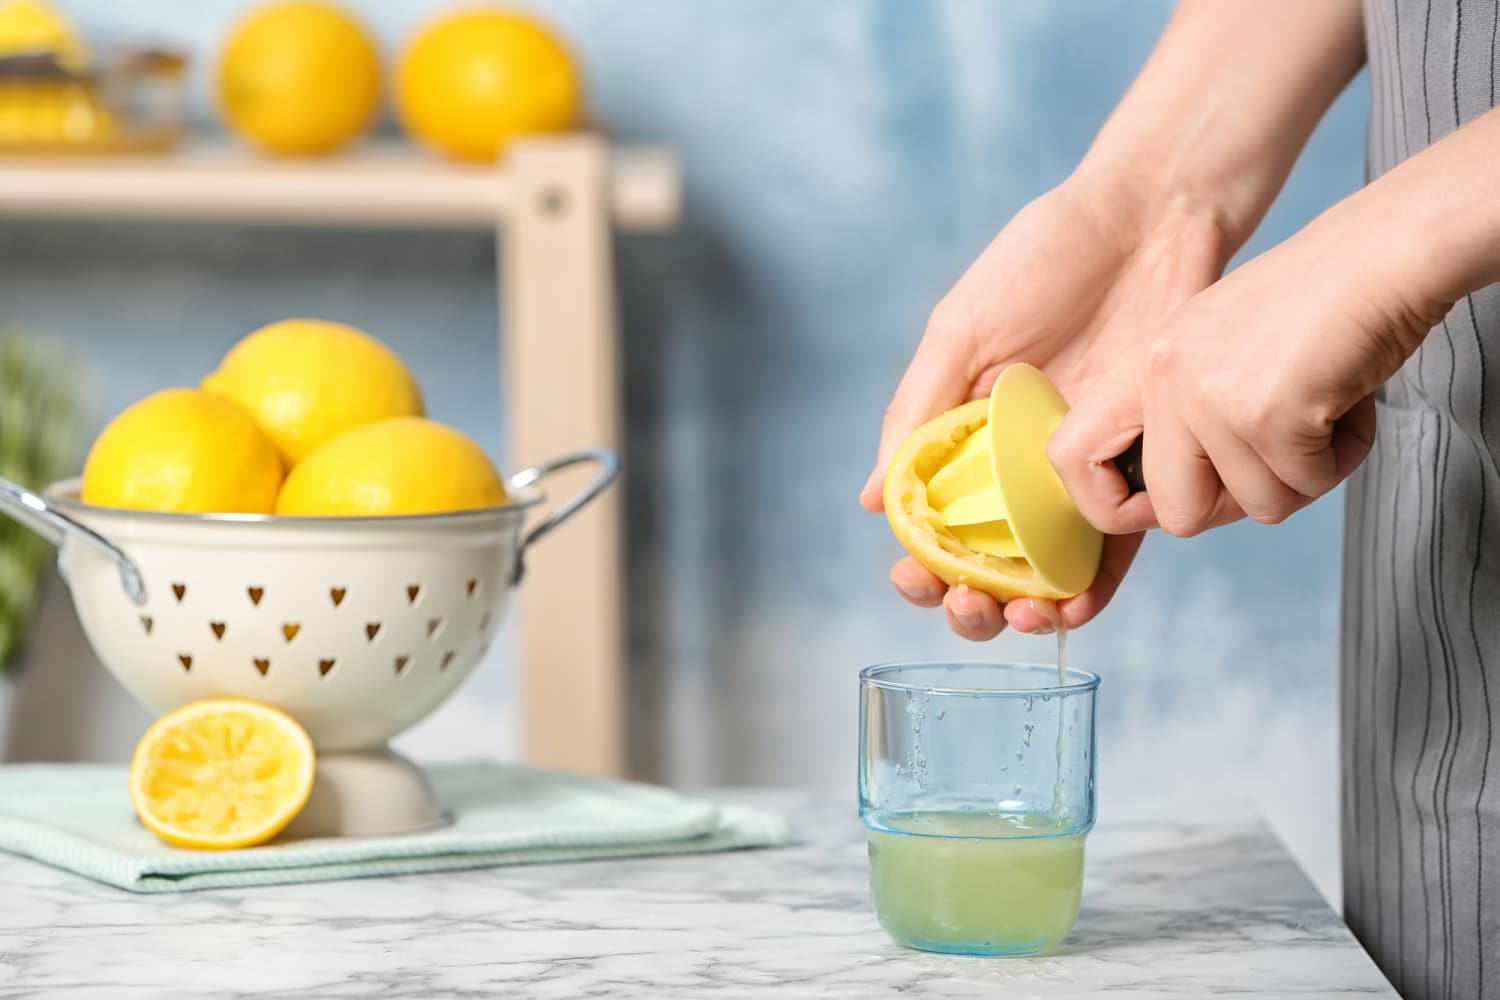 A reggeli citromos víz tényleg segít a fogyásban? | Nosalty